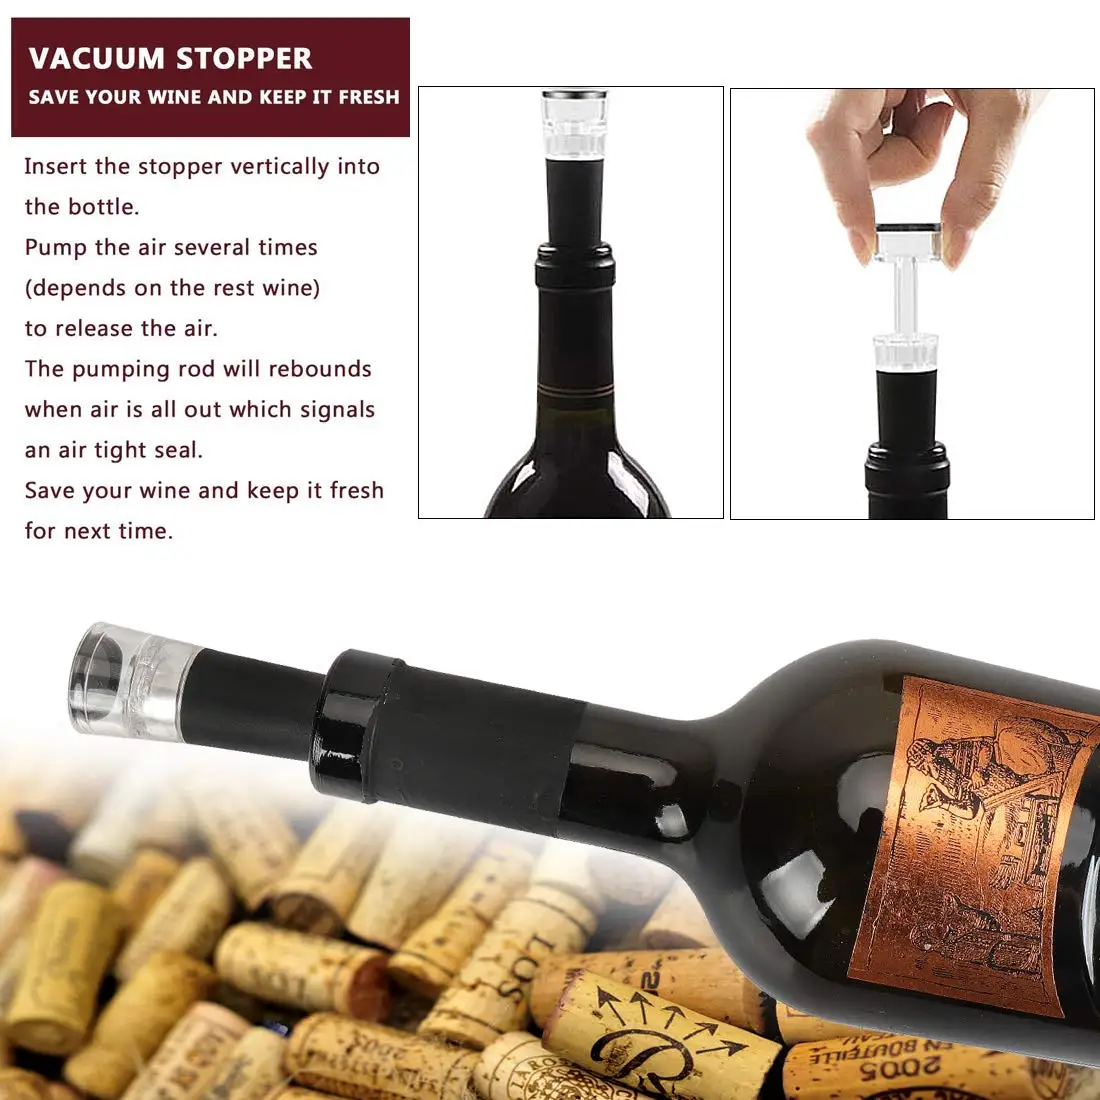 Antique wooden box rabbit wine corkscrew wine accessories gift set